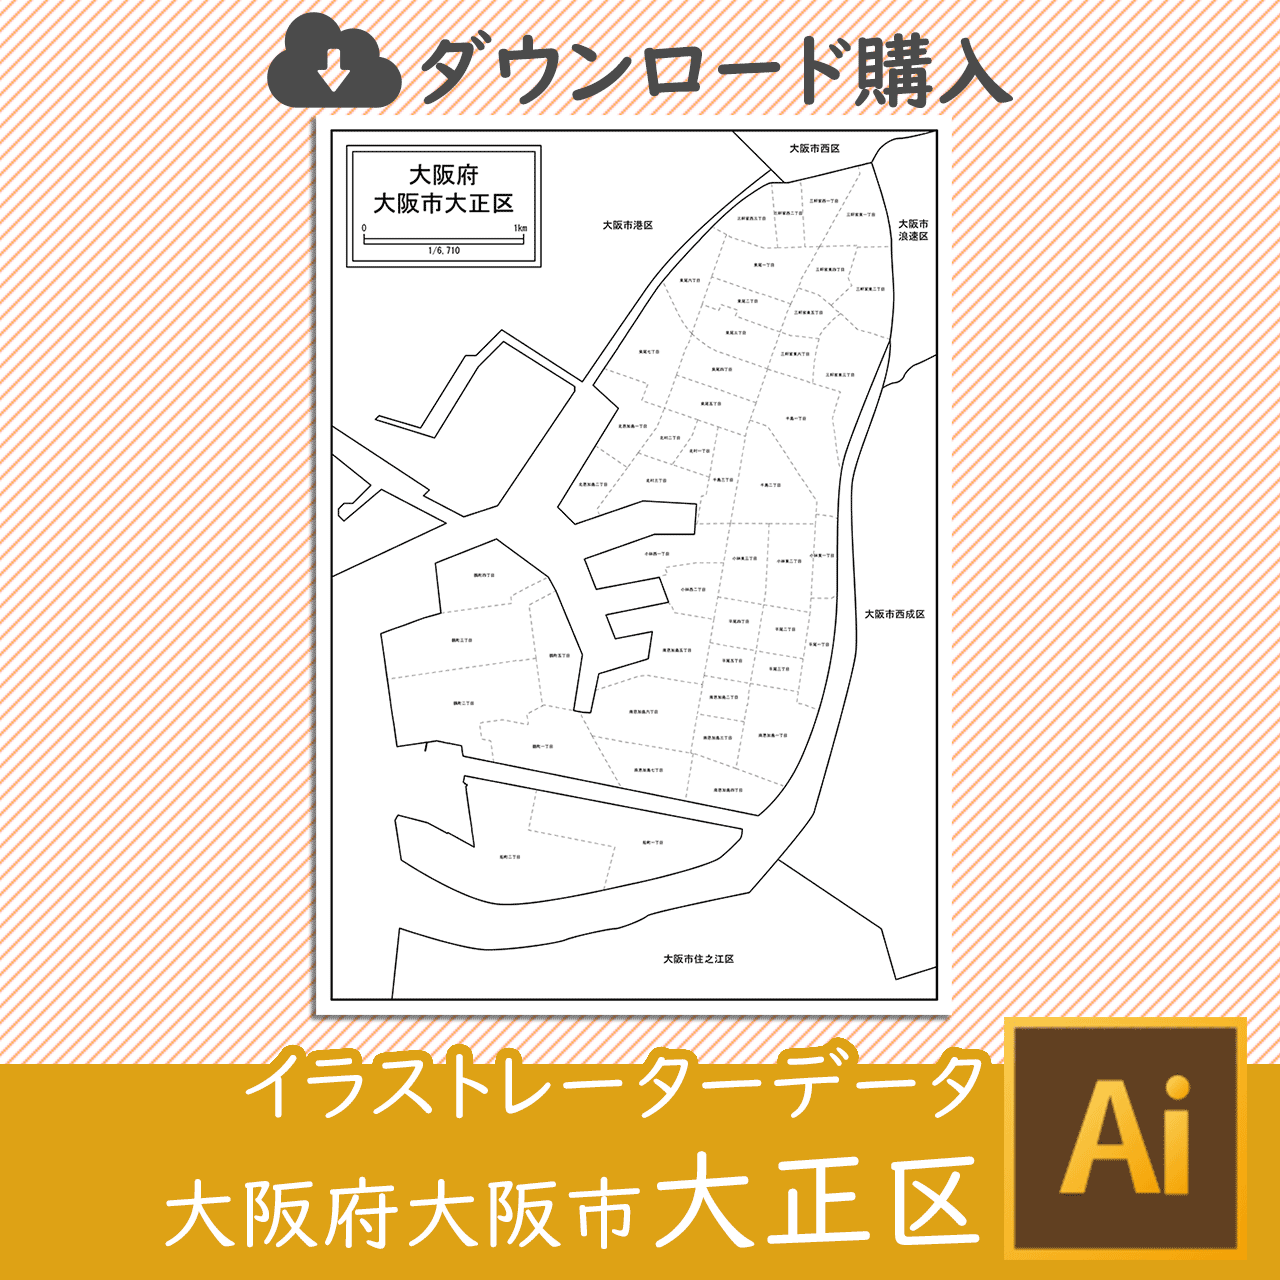 大阪市大正区の白地図のサムネイル画像